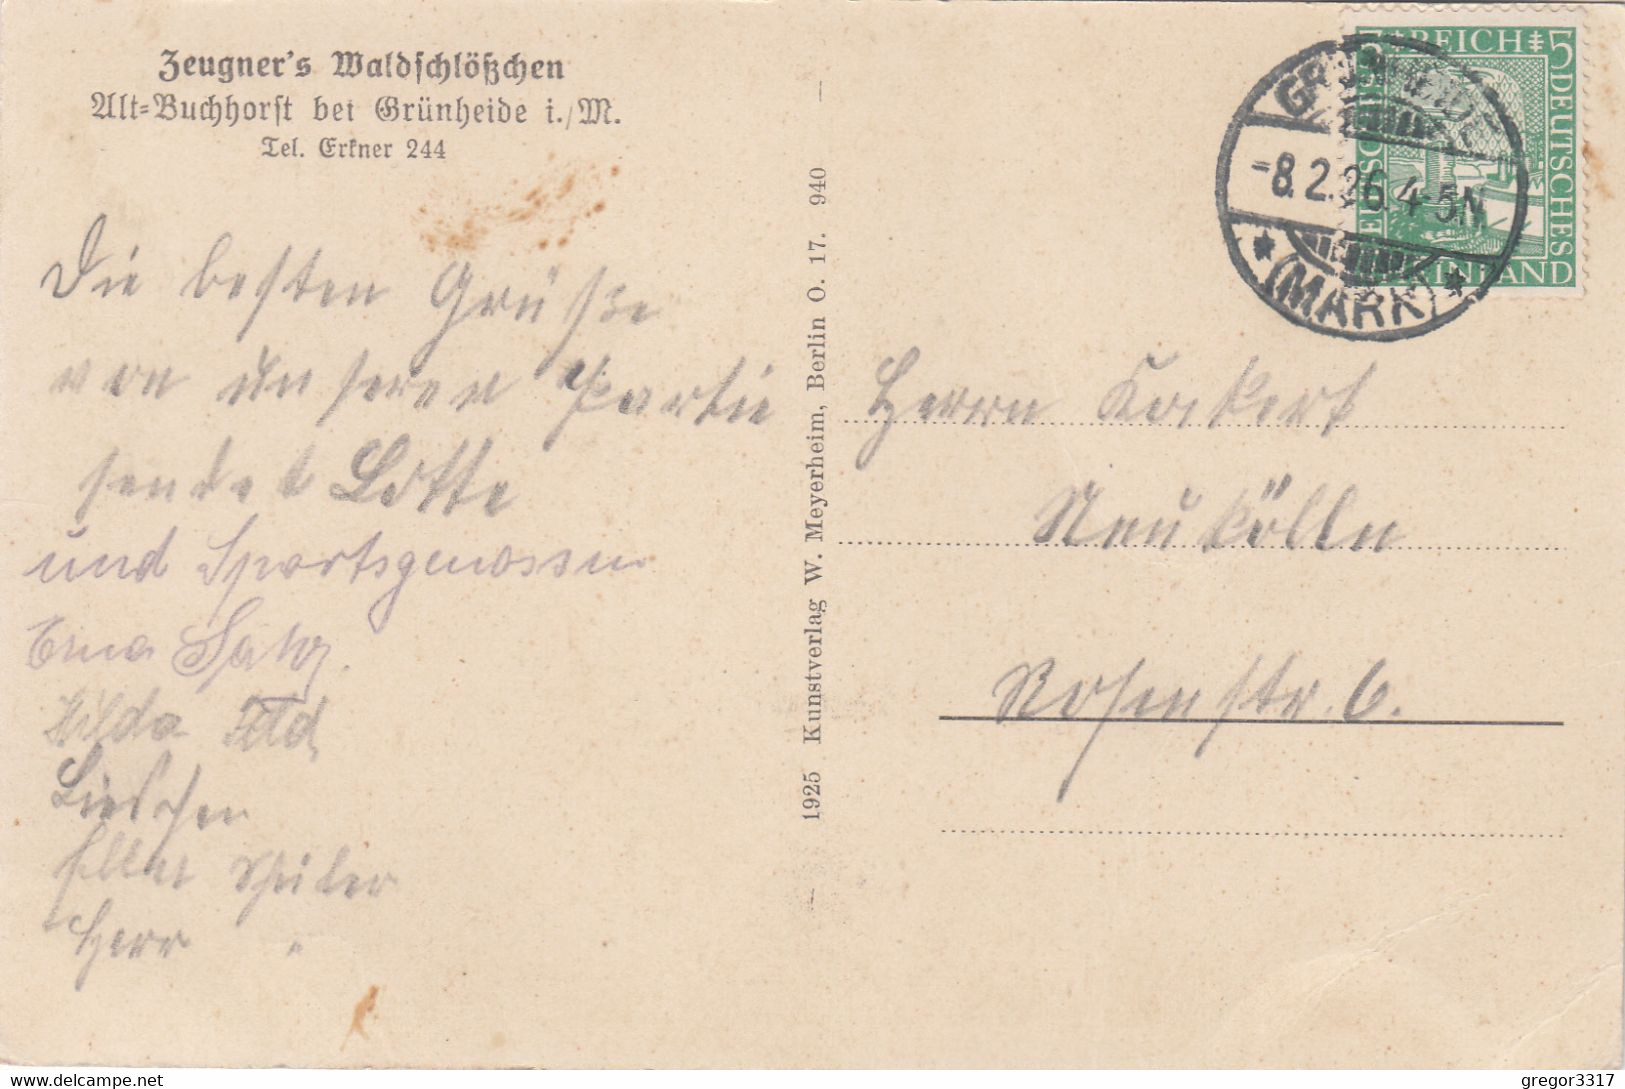 A115) ALT BUCHHORST I. M. - Möllensee Partie Bei Der Spiegelquelle ALT !! 08.02.1926 - Gruenheide